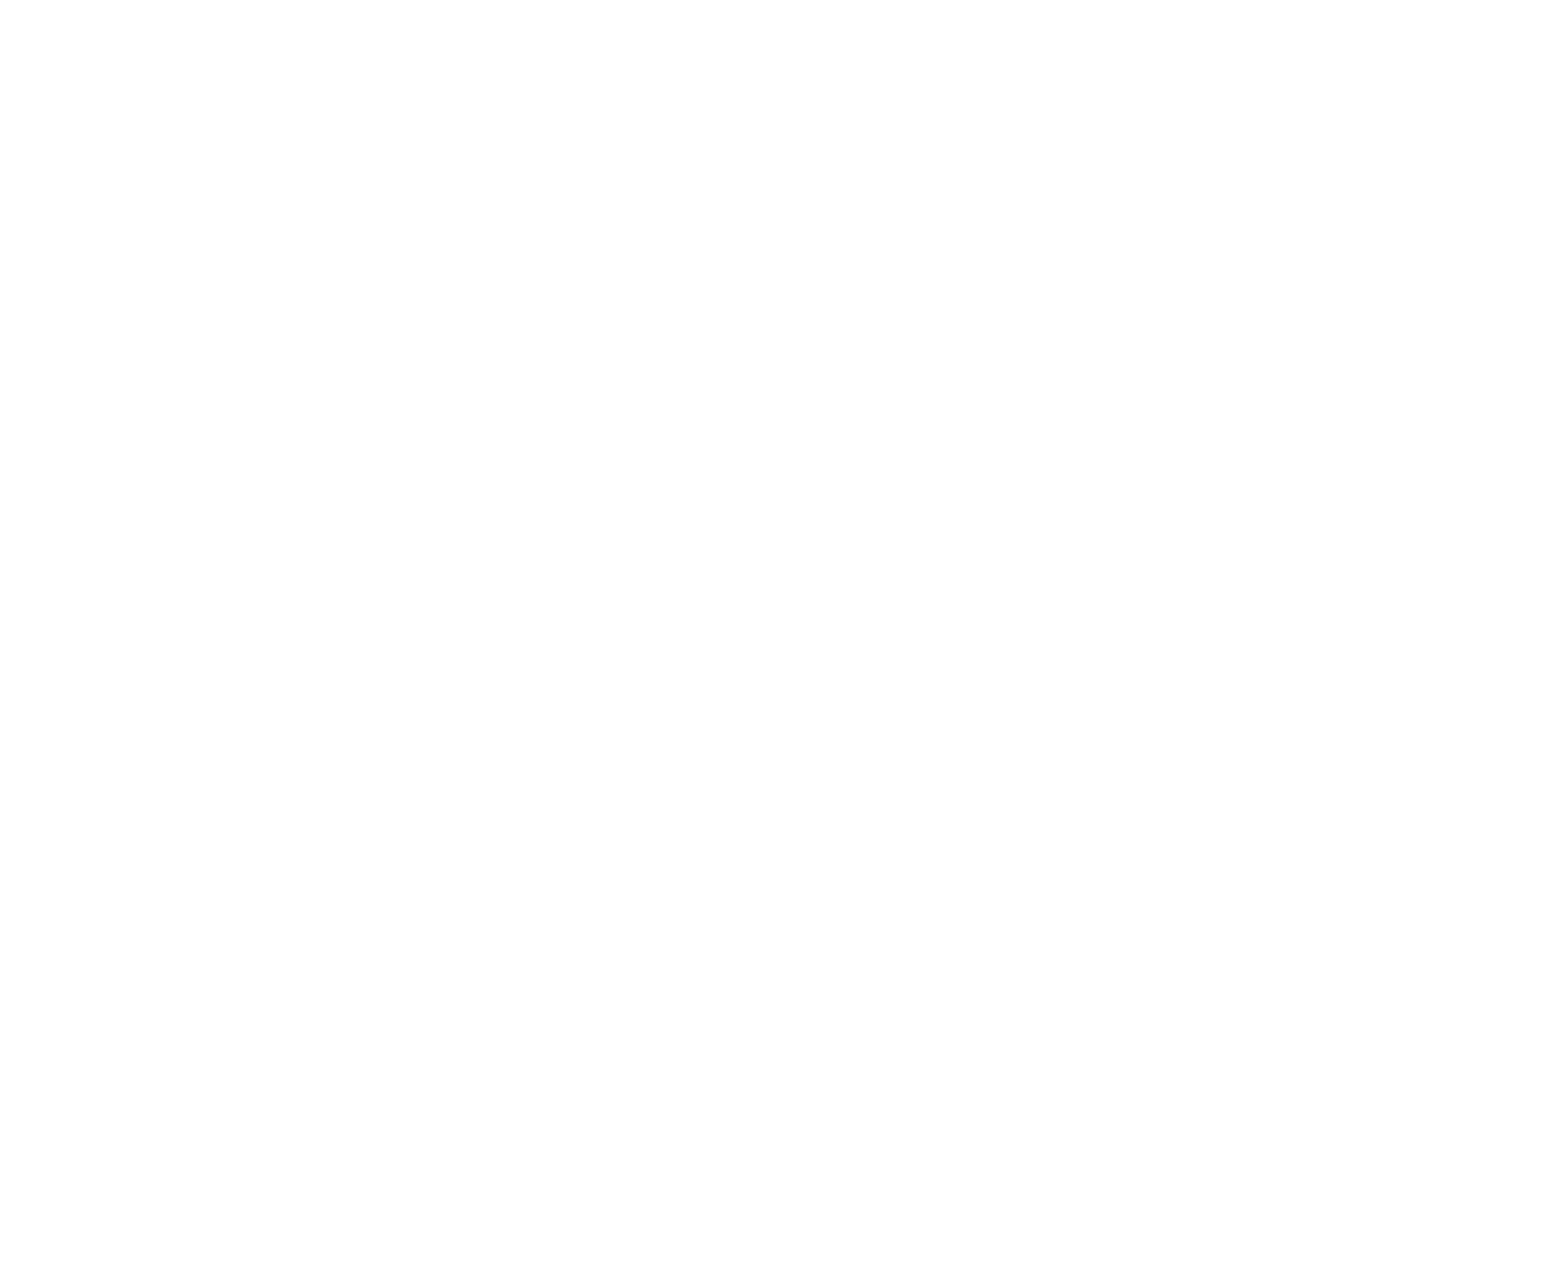 Enterprise Mobility logo for dark backgrounds (transparent PNG)